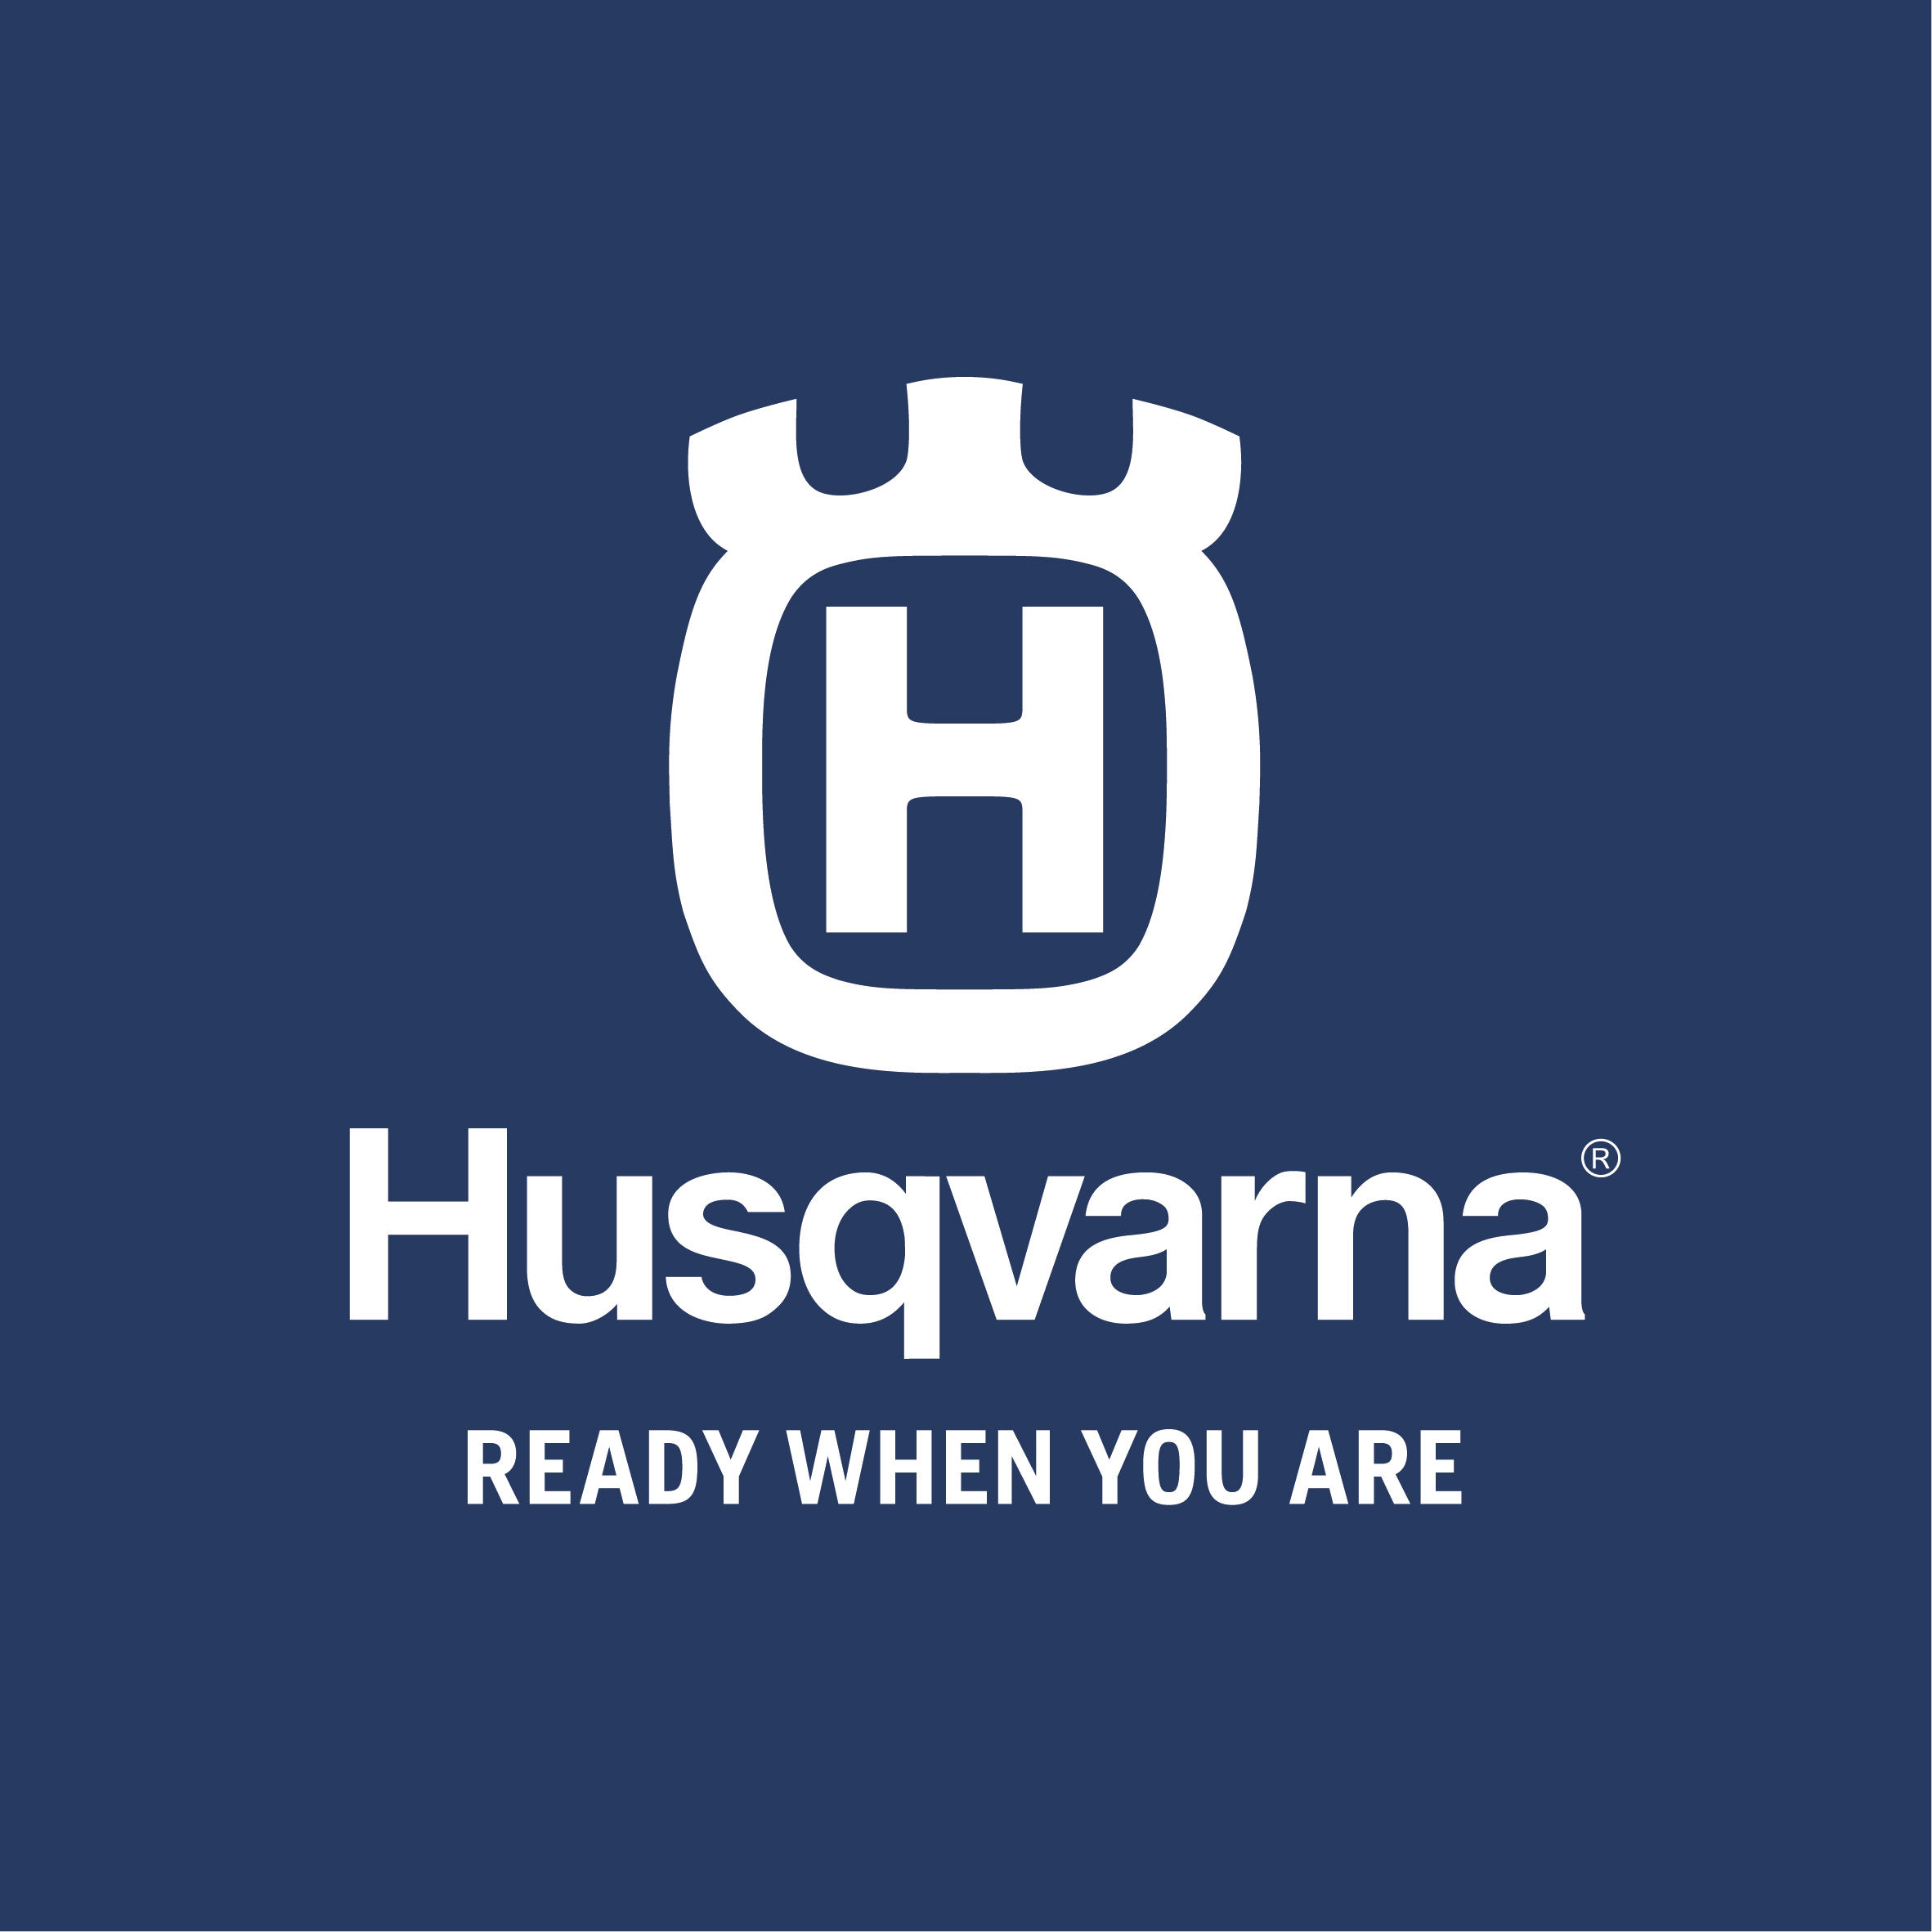 Husqvarna Austria GmbH in Linz